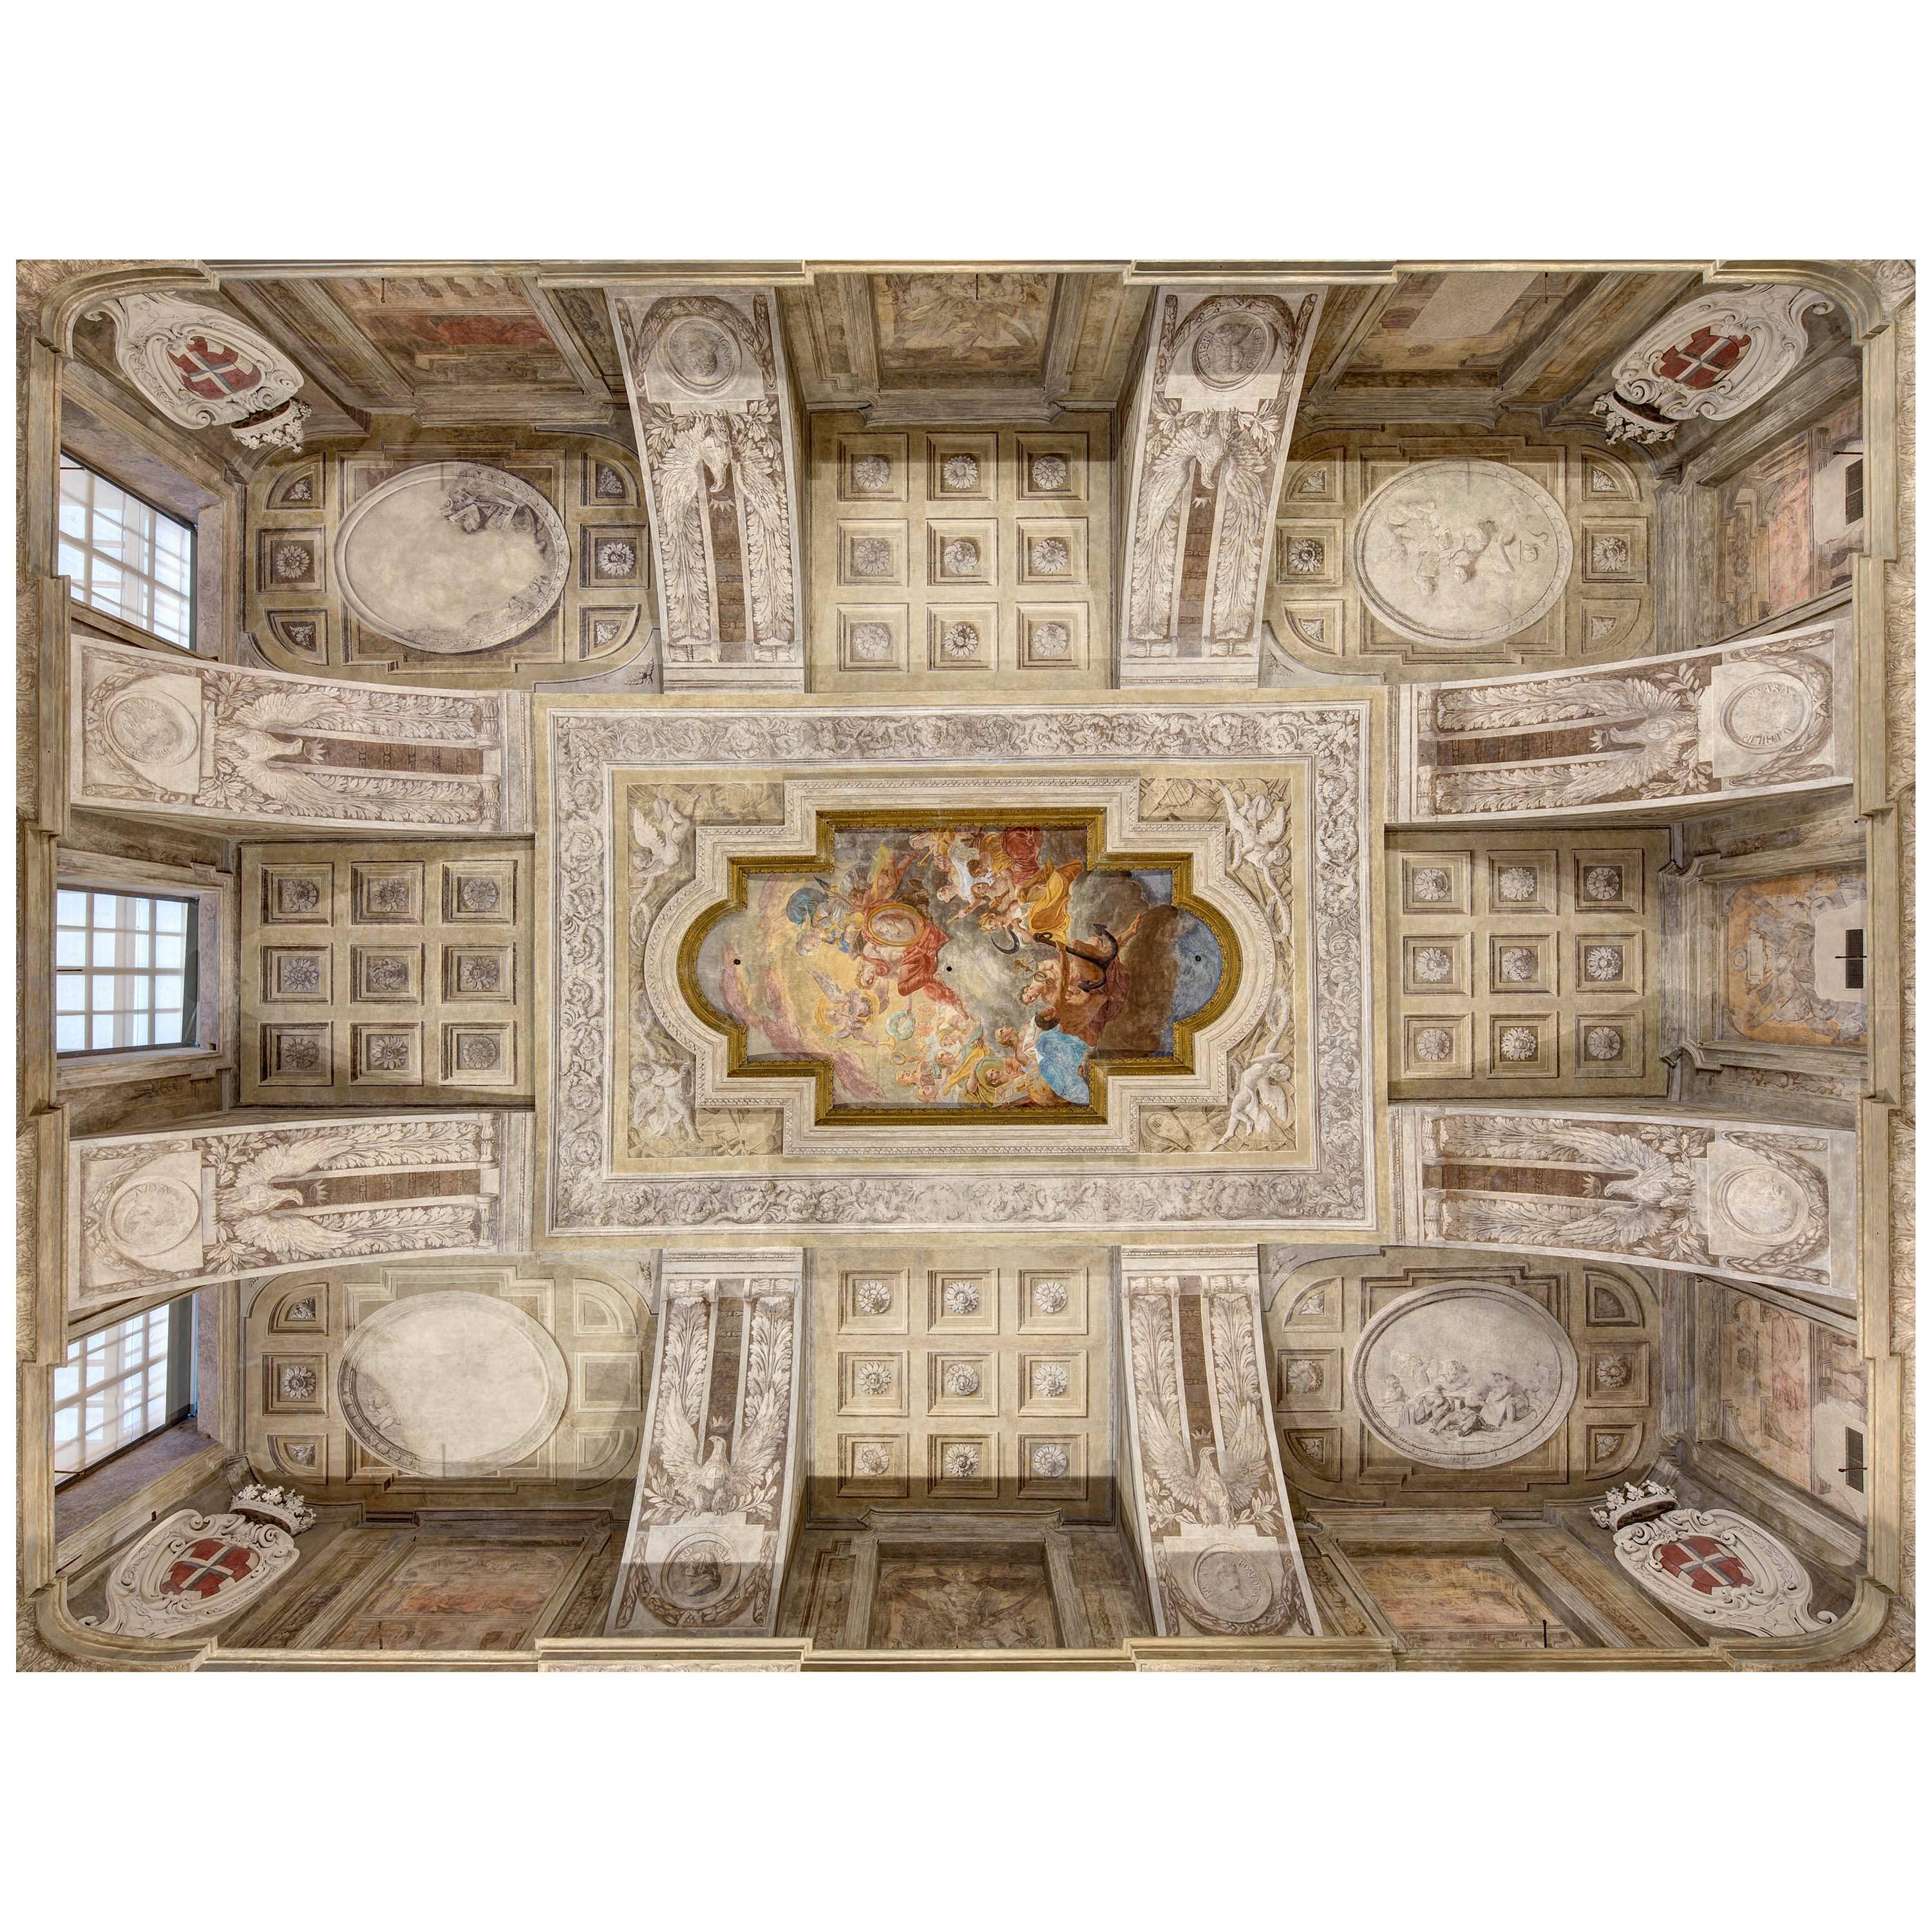 Palazzo Madama, soffitto, Torino 2017 by Carlo Carossio